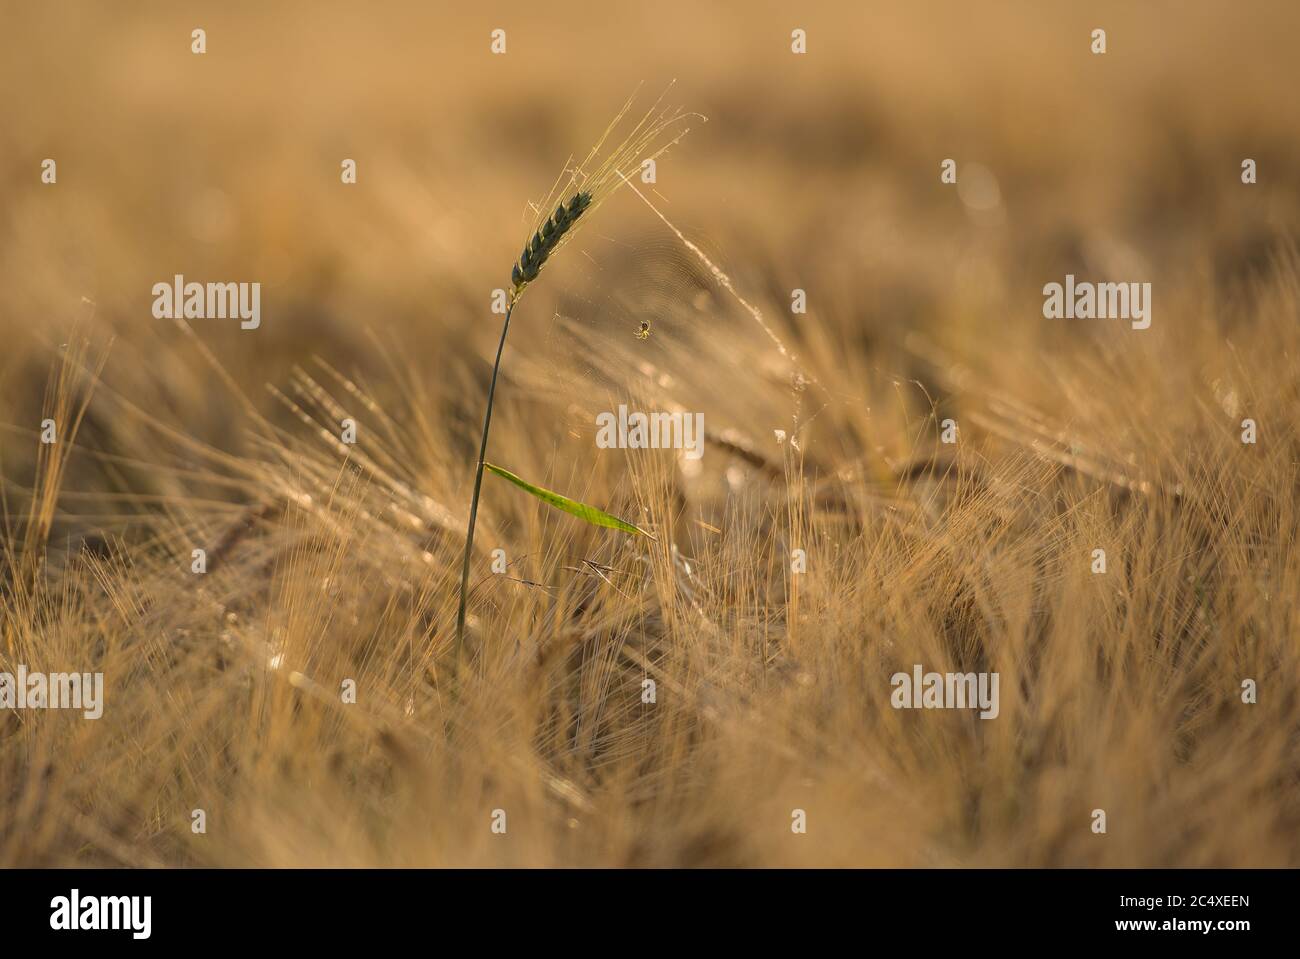 Spinnennetz mit Spinne im Getreidefeld auf einer grünen Ähre Stock Photo